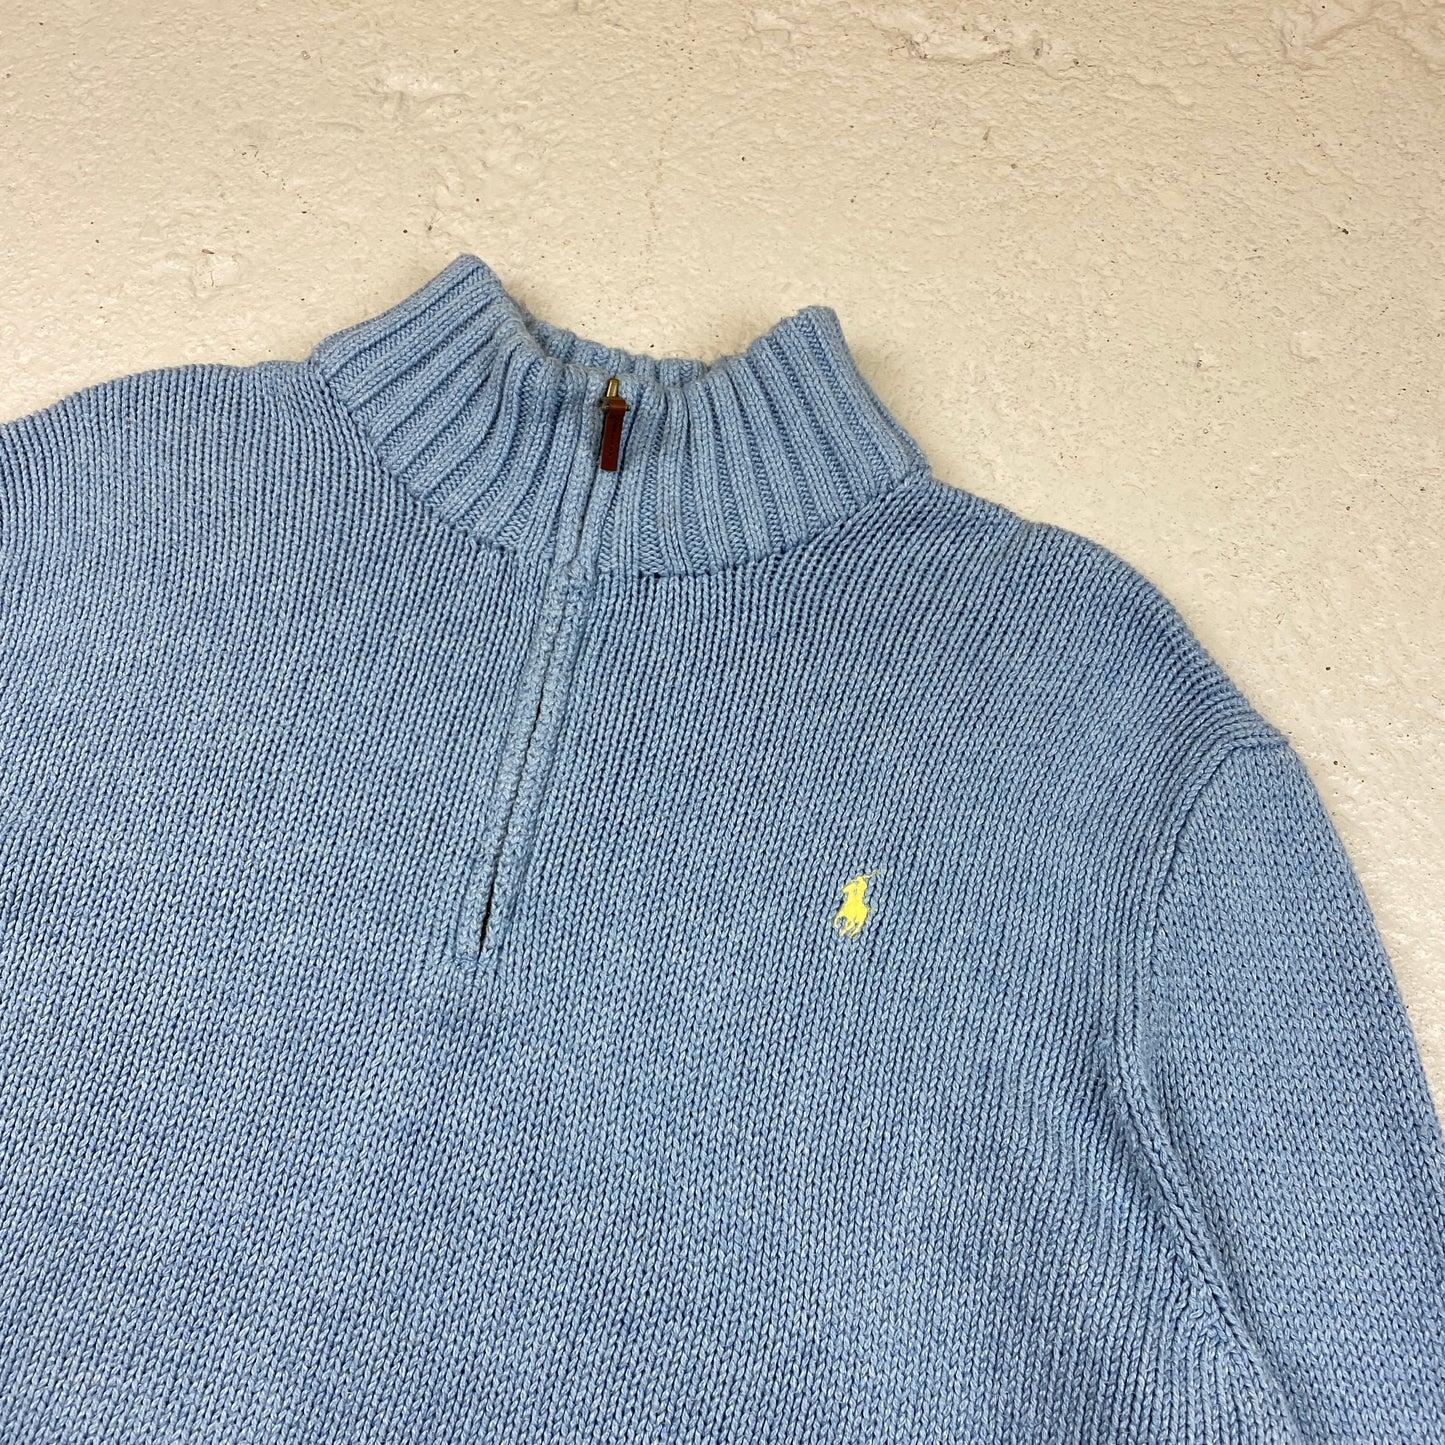 Polo Ralph Lauren 1/4 zip knit sweater (XXL)